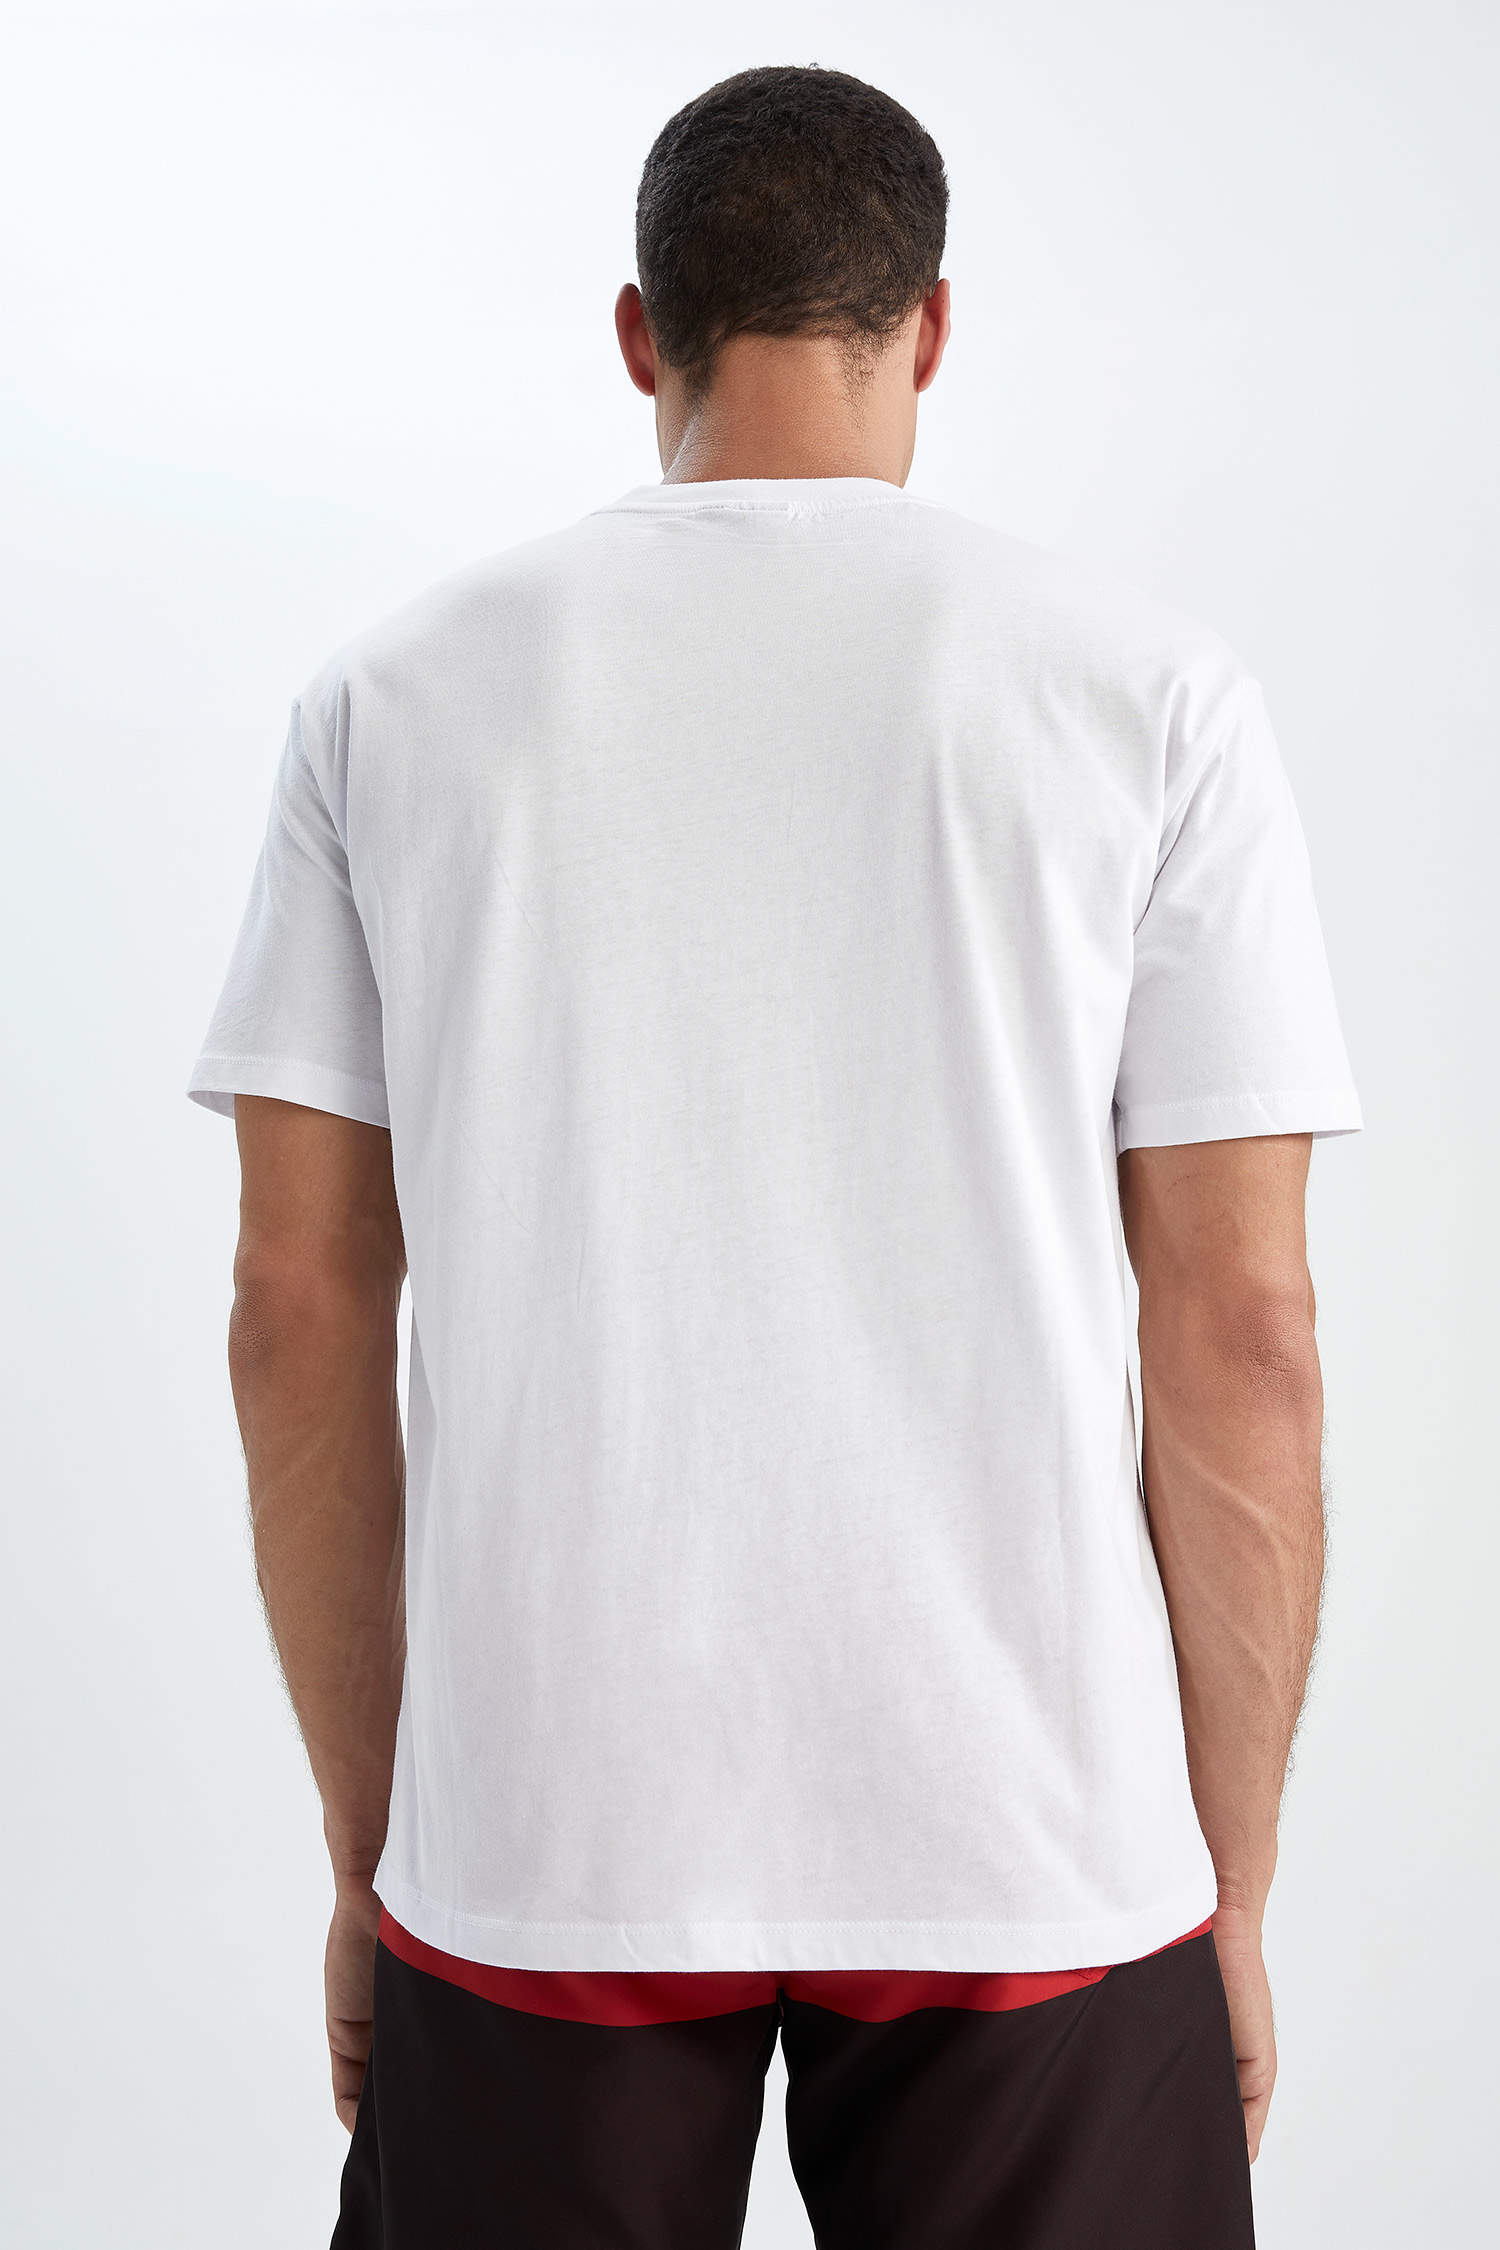 T-Shirt Leweul blanc homme – BOUTIQUE PEULH VAGABOND